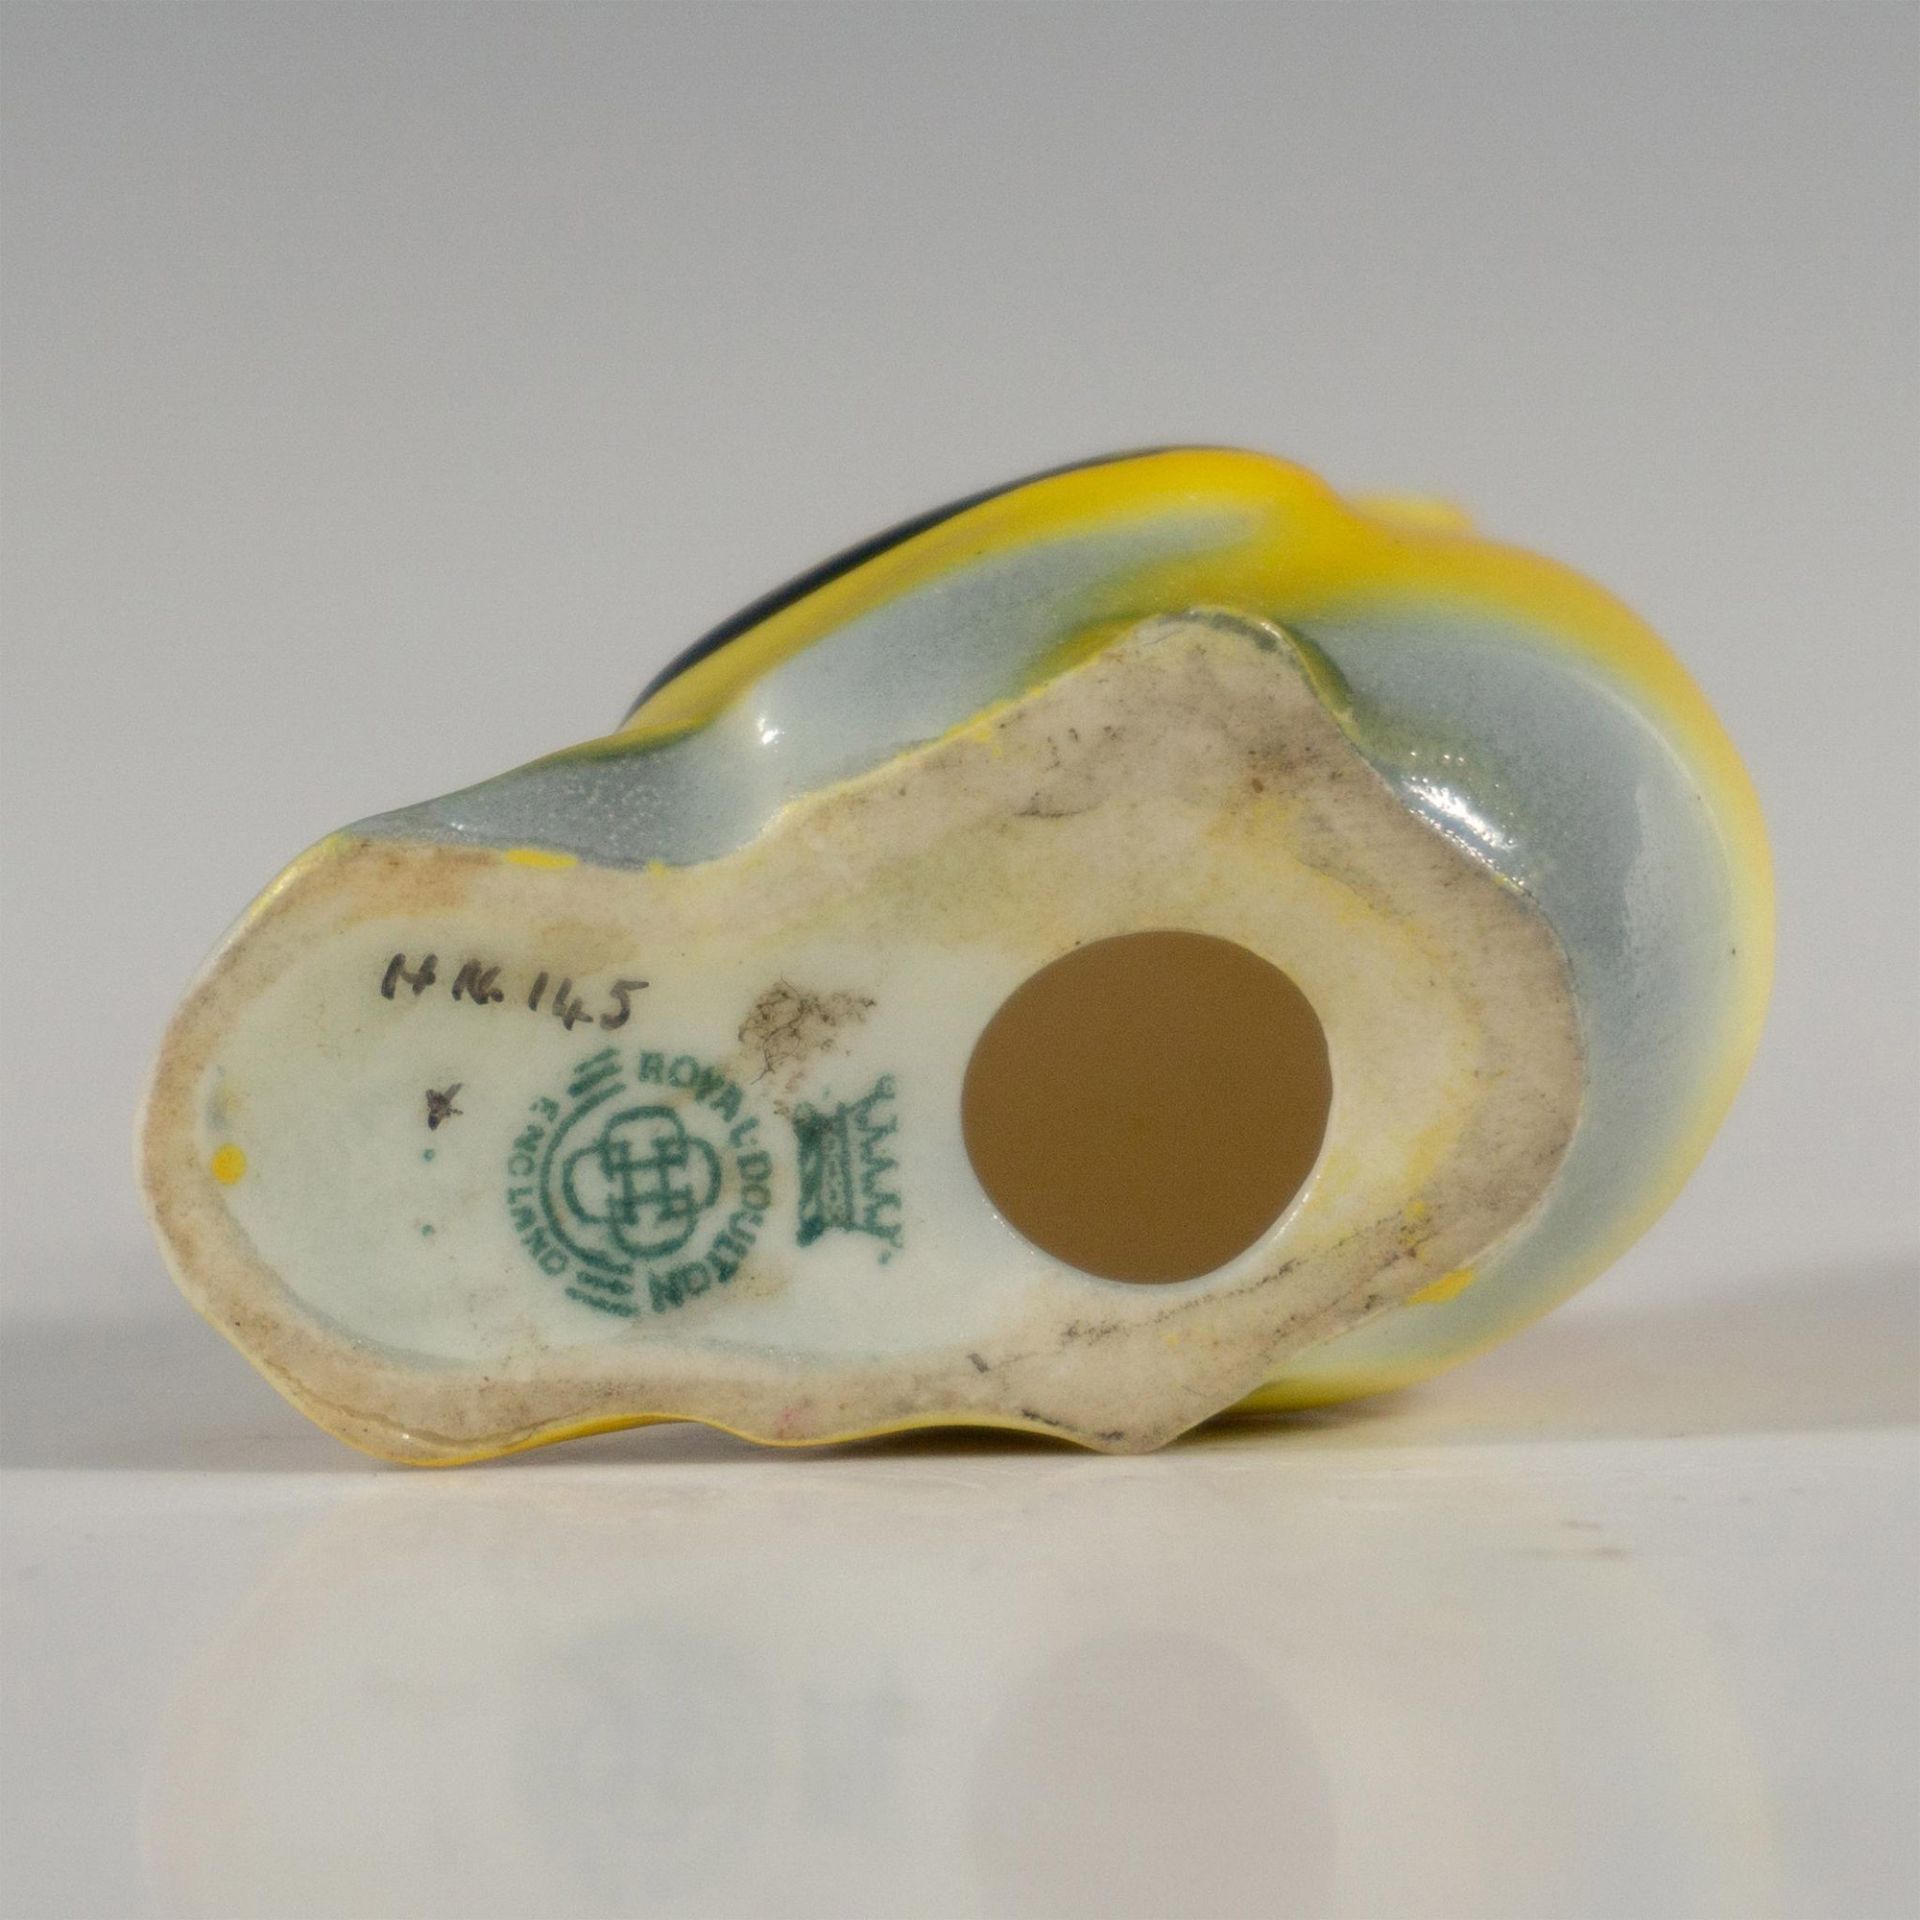 Royal Doulton Porcelain Bird Figurine, Fledgling HN145C - Image 5 of 5